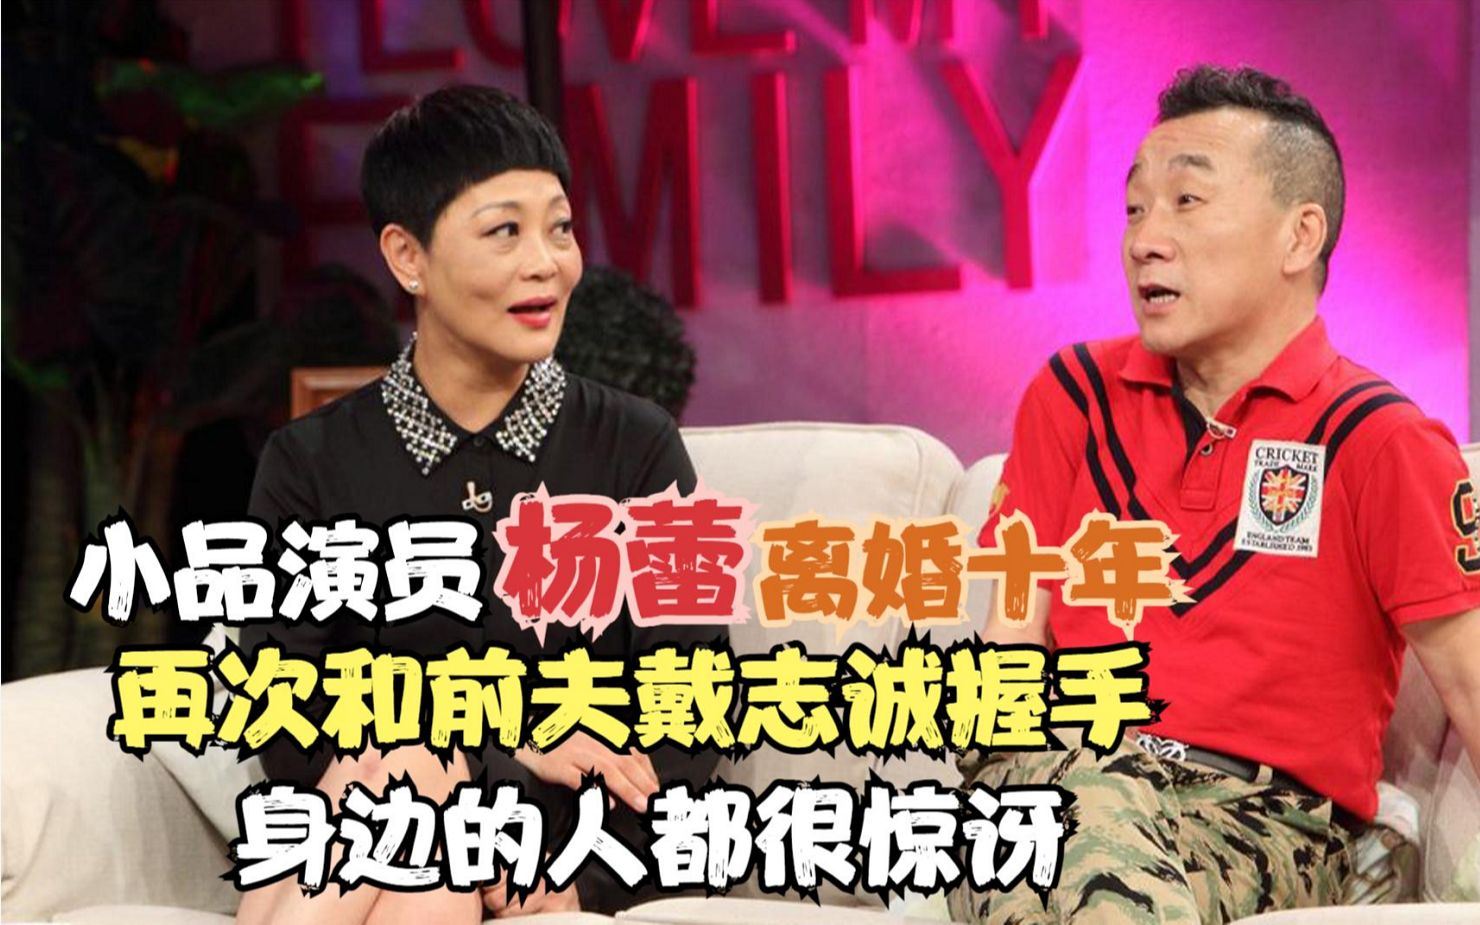 小品演员杨蕾离婚10年再次和前夫戴志诚握手身边的人都很惊讶